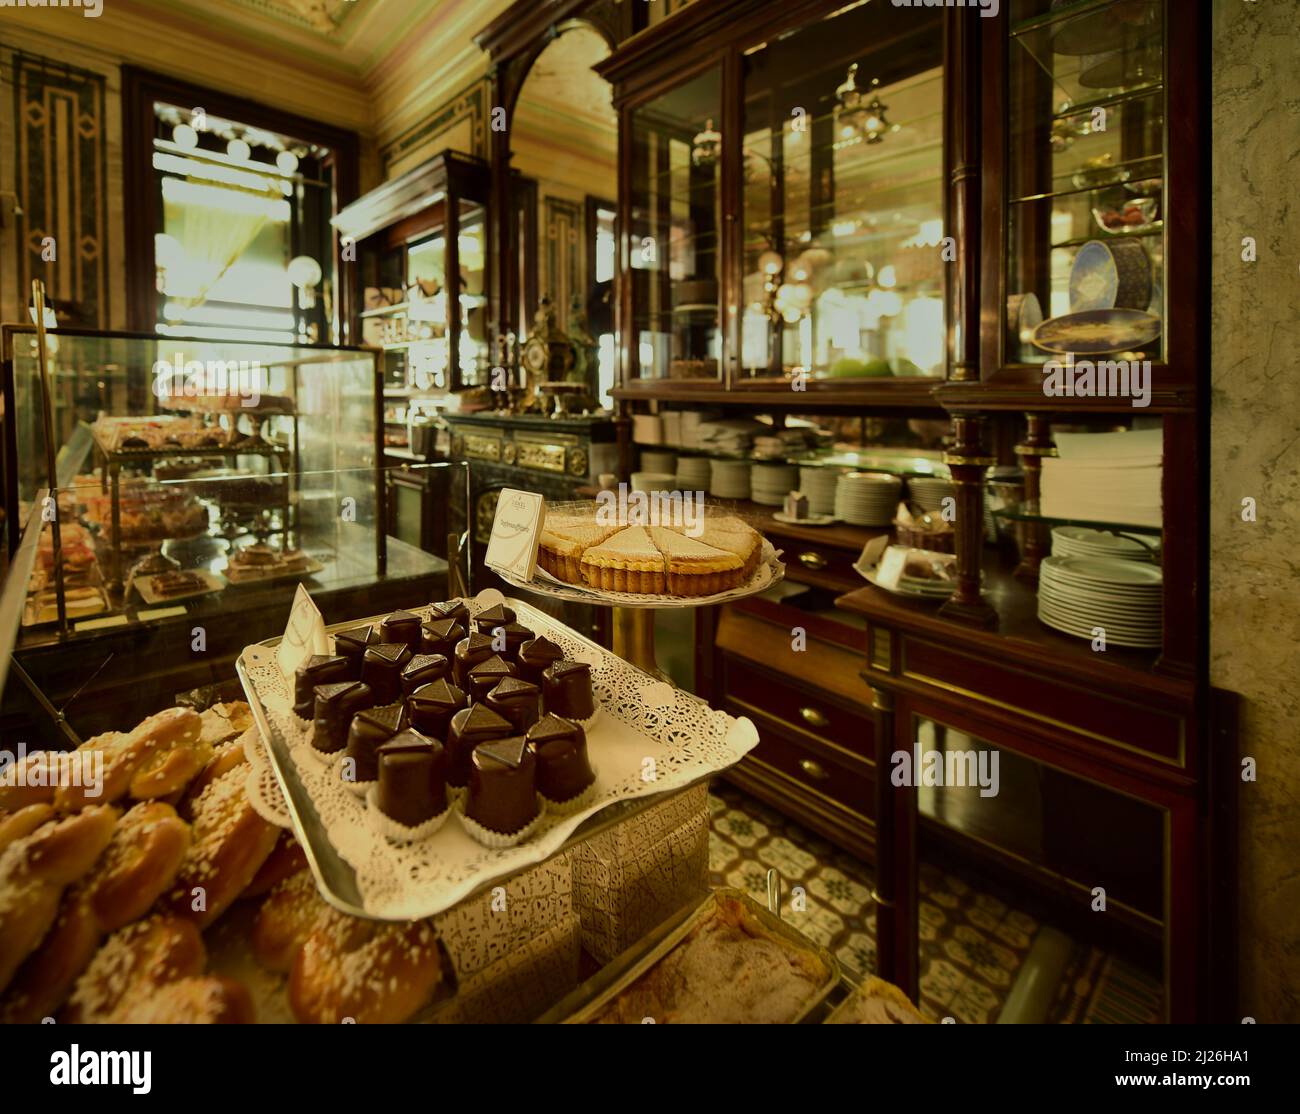 Cafe Demel, tienda tradicional de pasteles y chocolates en el centro de la ciudad. Viena, Austria Foto de stock